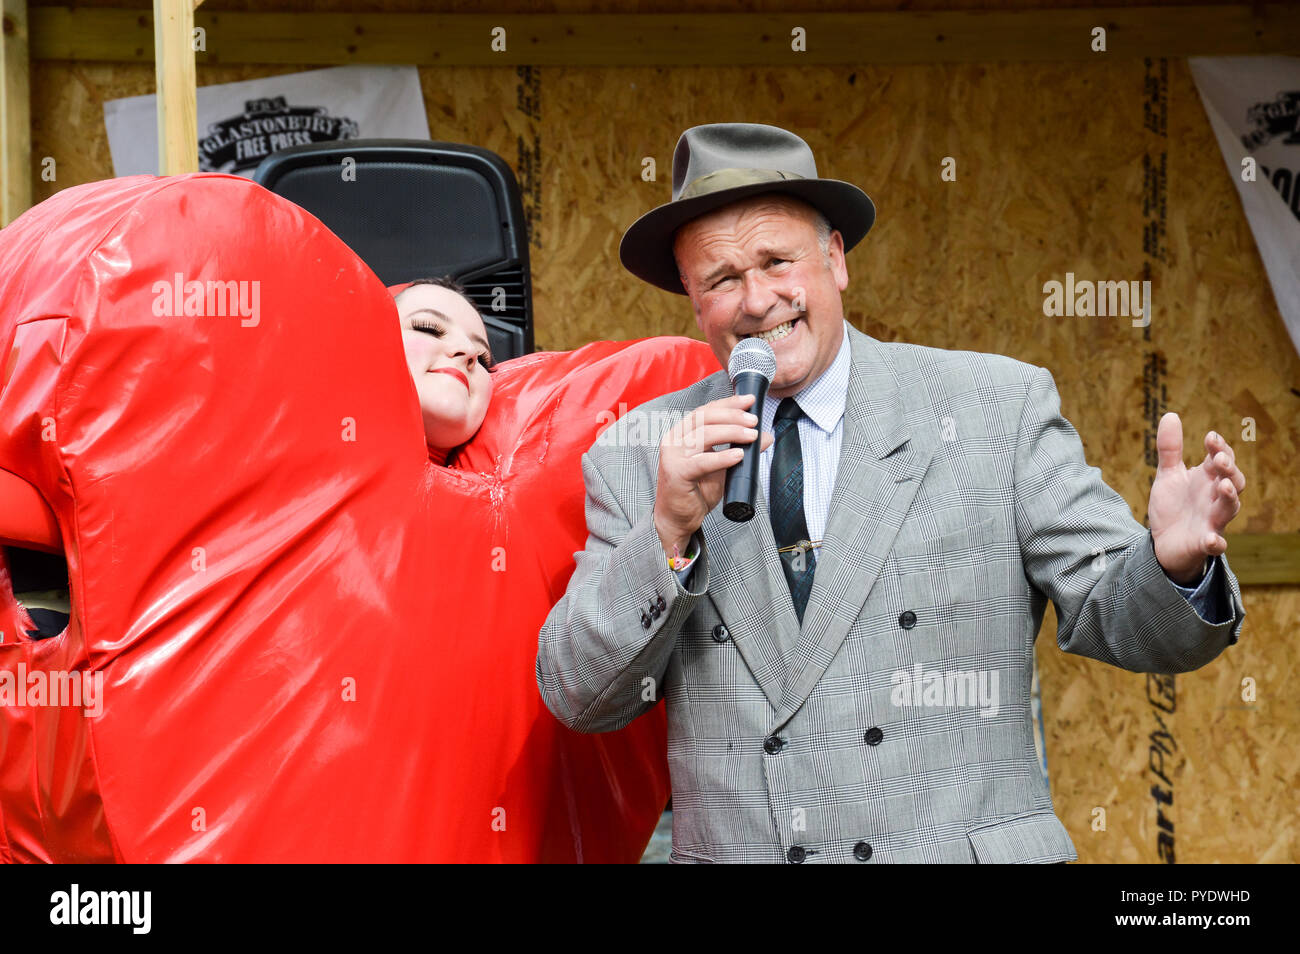 Juin, 28th, 2015.festival de Glastonbury, Royaume-Uni. Un homme habillé comme un chanteur crooner des années 40. Le chant à Glastonbury en regard d'une femme vêtue comme un cœur rouge Banque D'Images